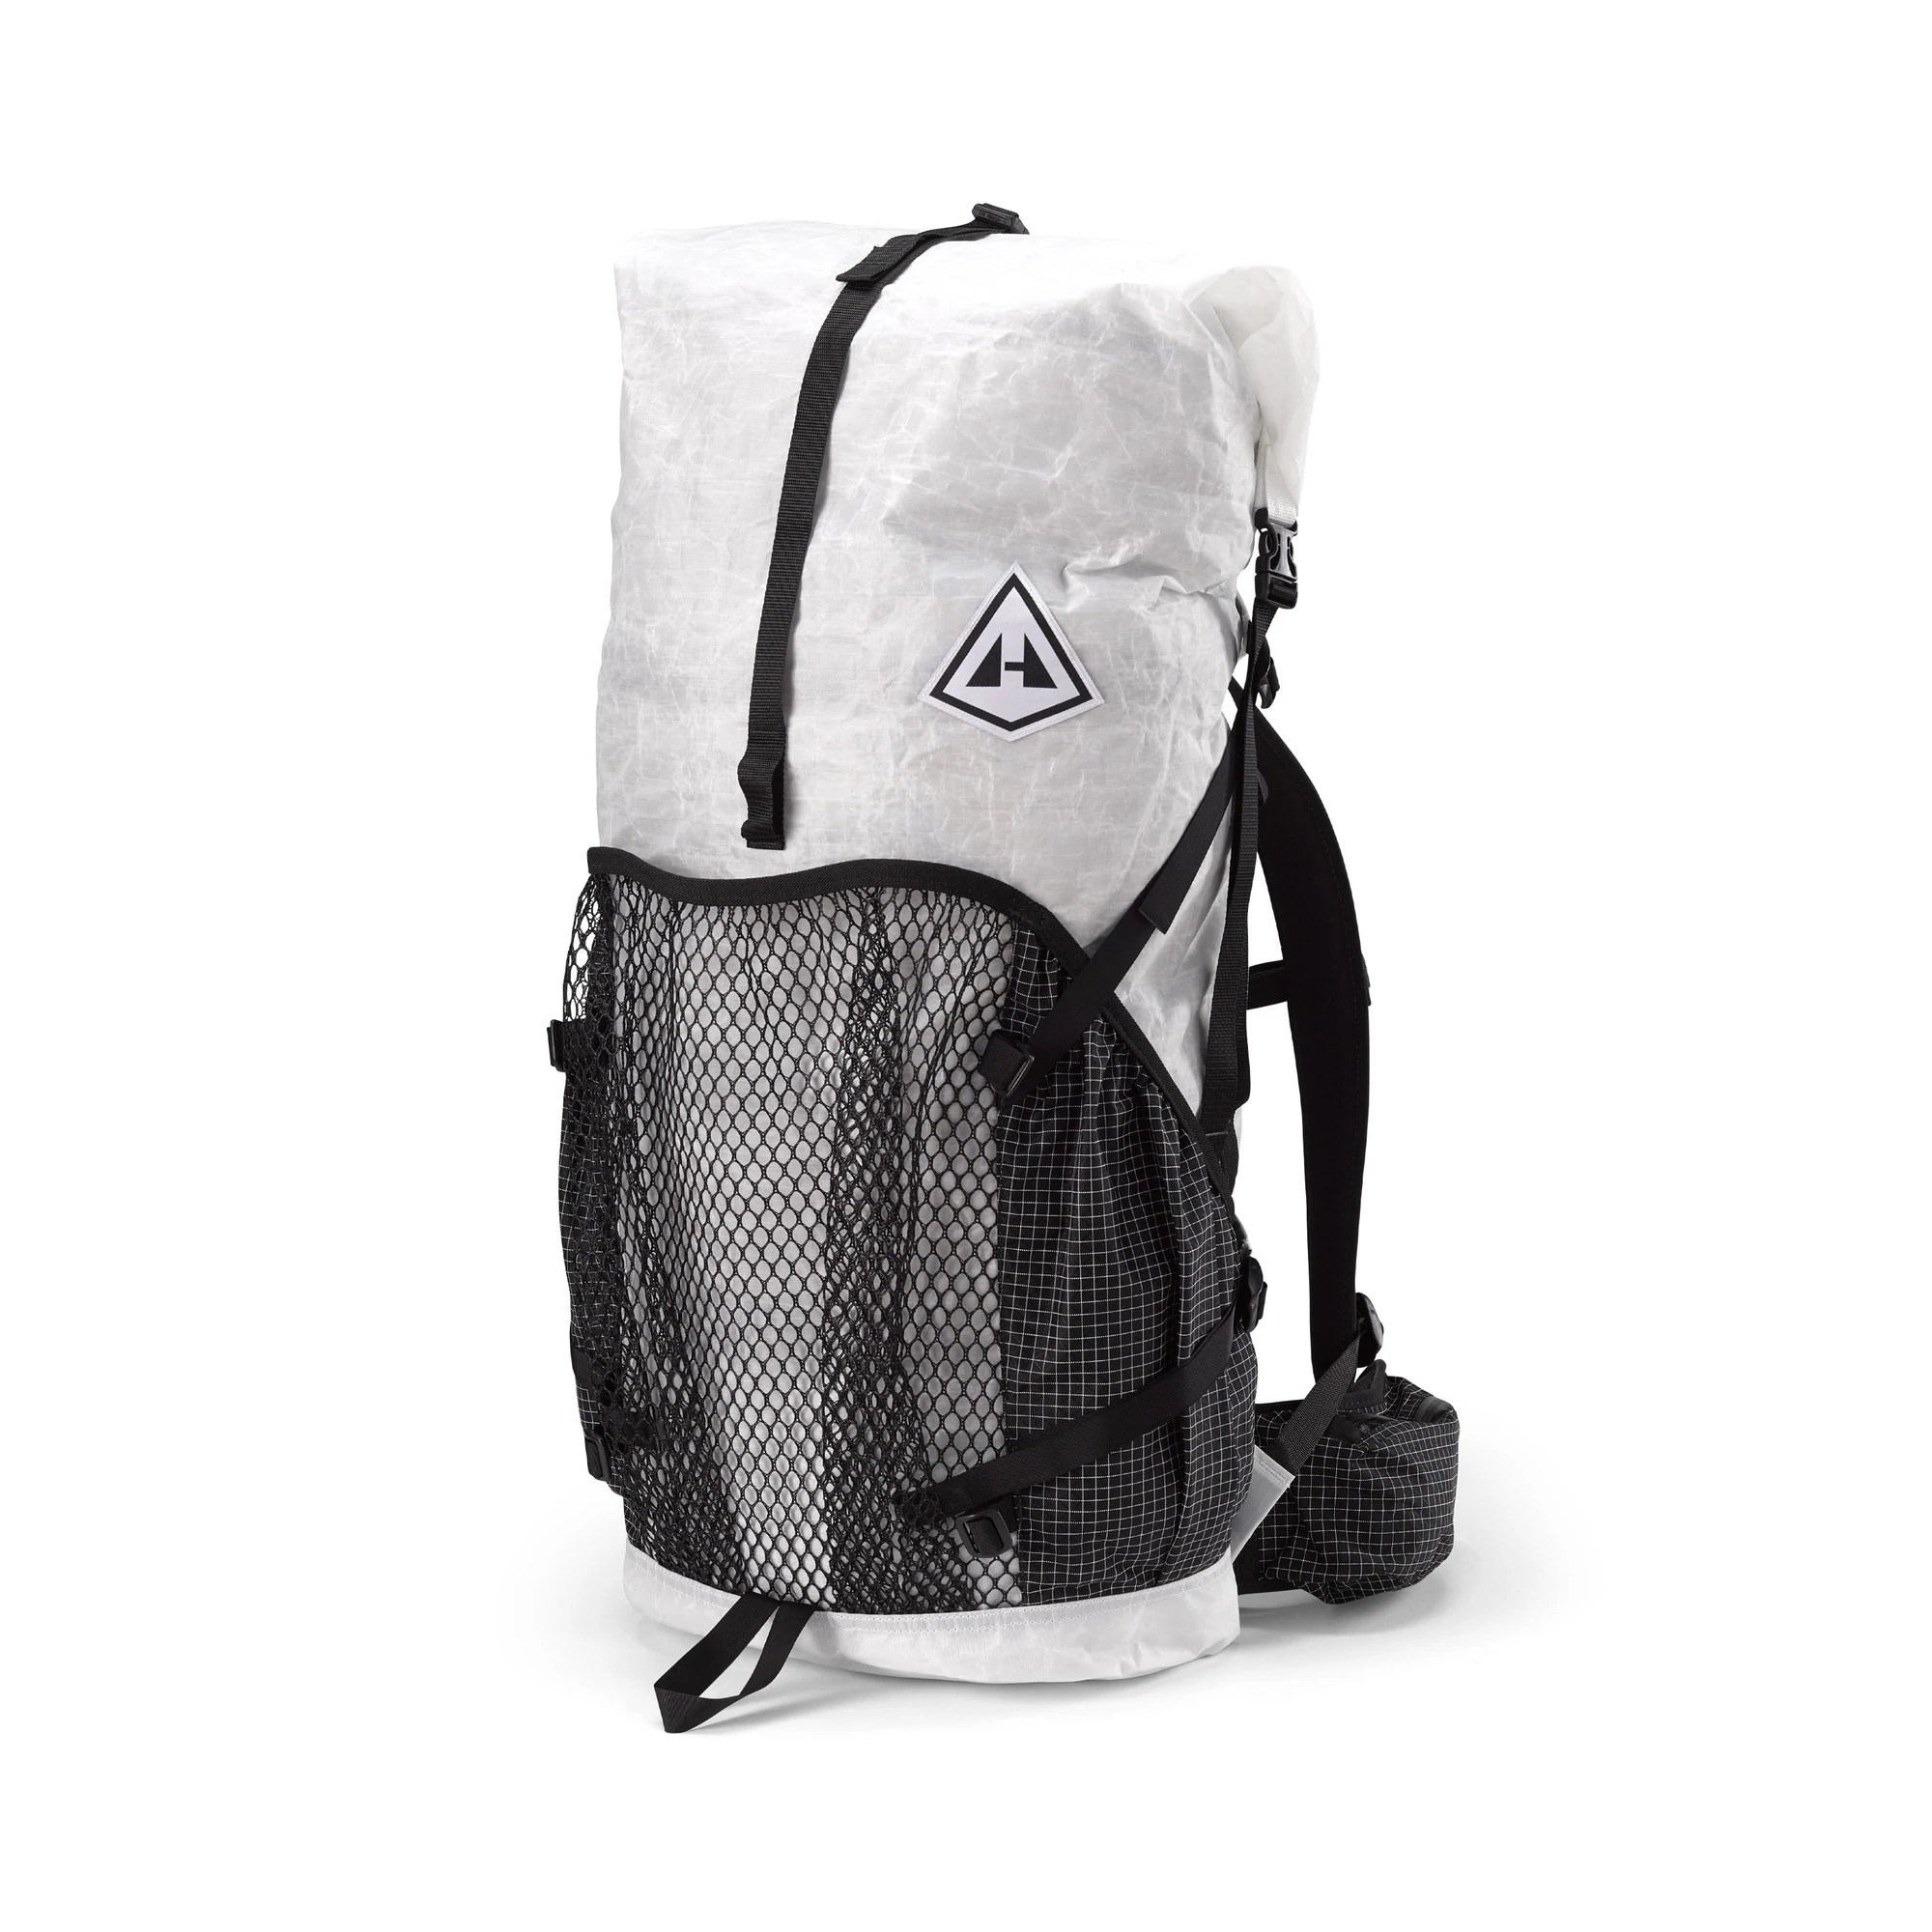 Hyperlite Mountain Gear 3400 Junction - White - Backpackinglight.dk